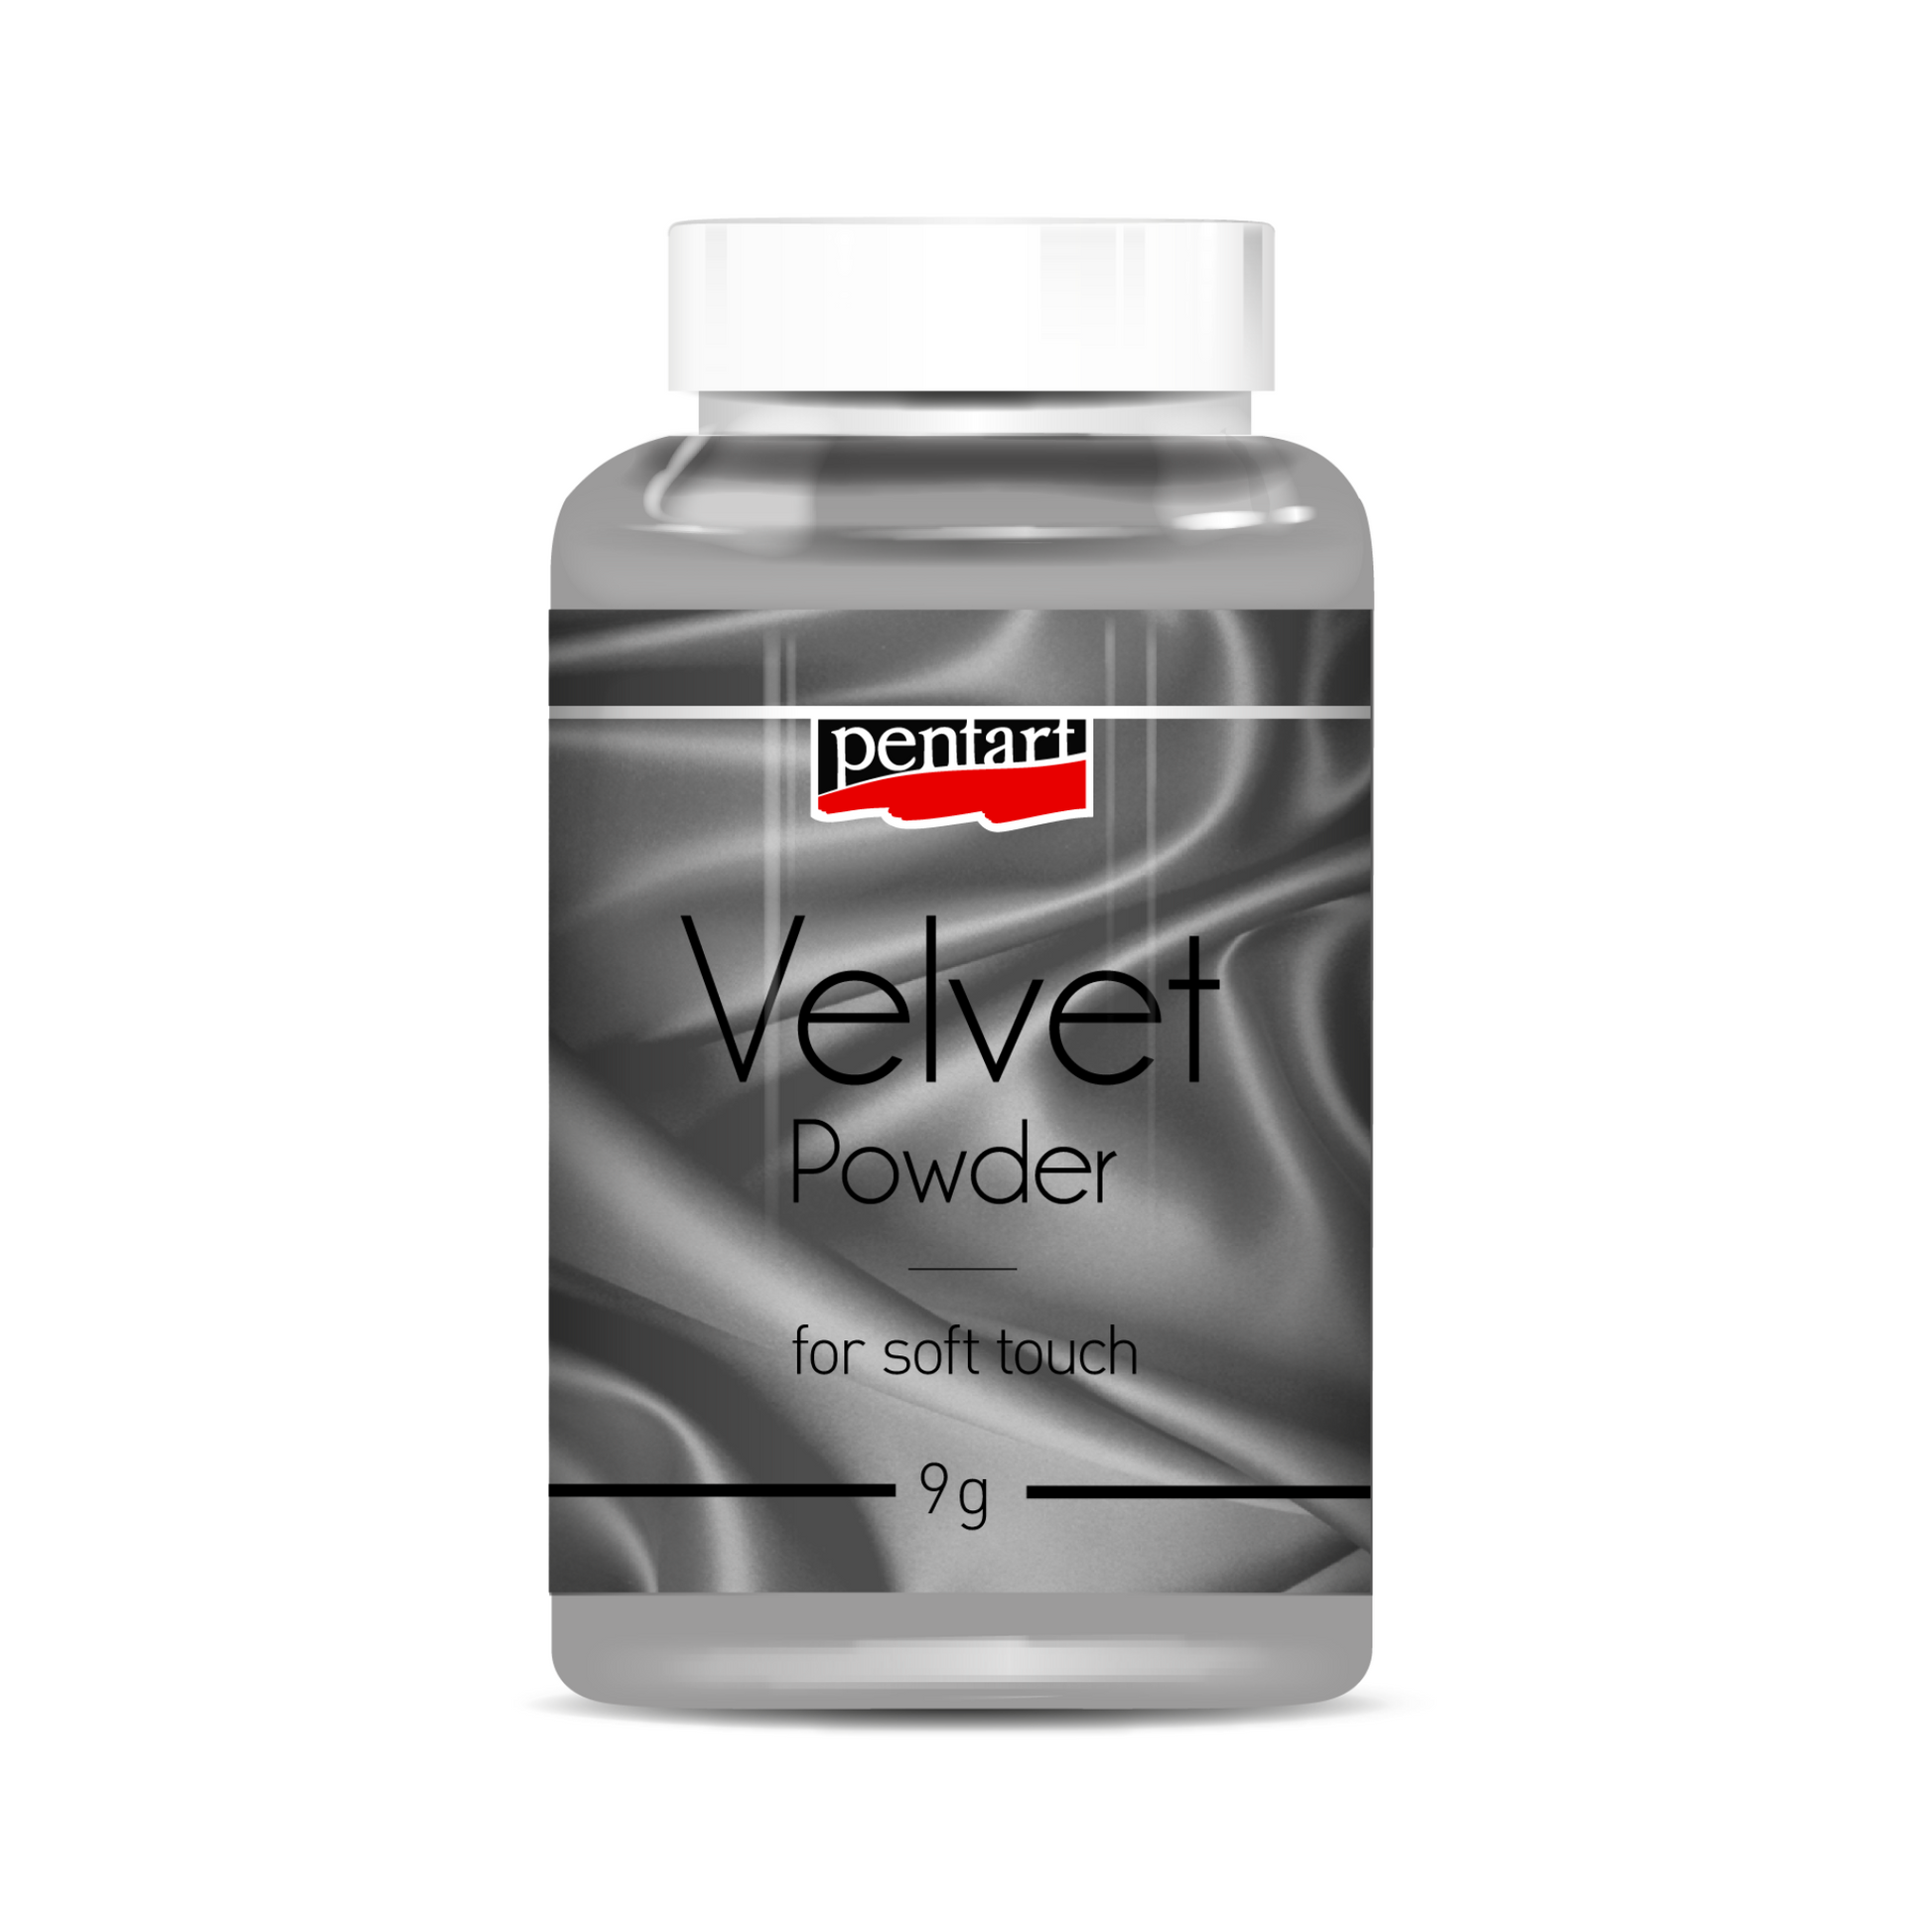 Velvet Powder by Pentart. Grey 9g available at Milton's Daughter.